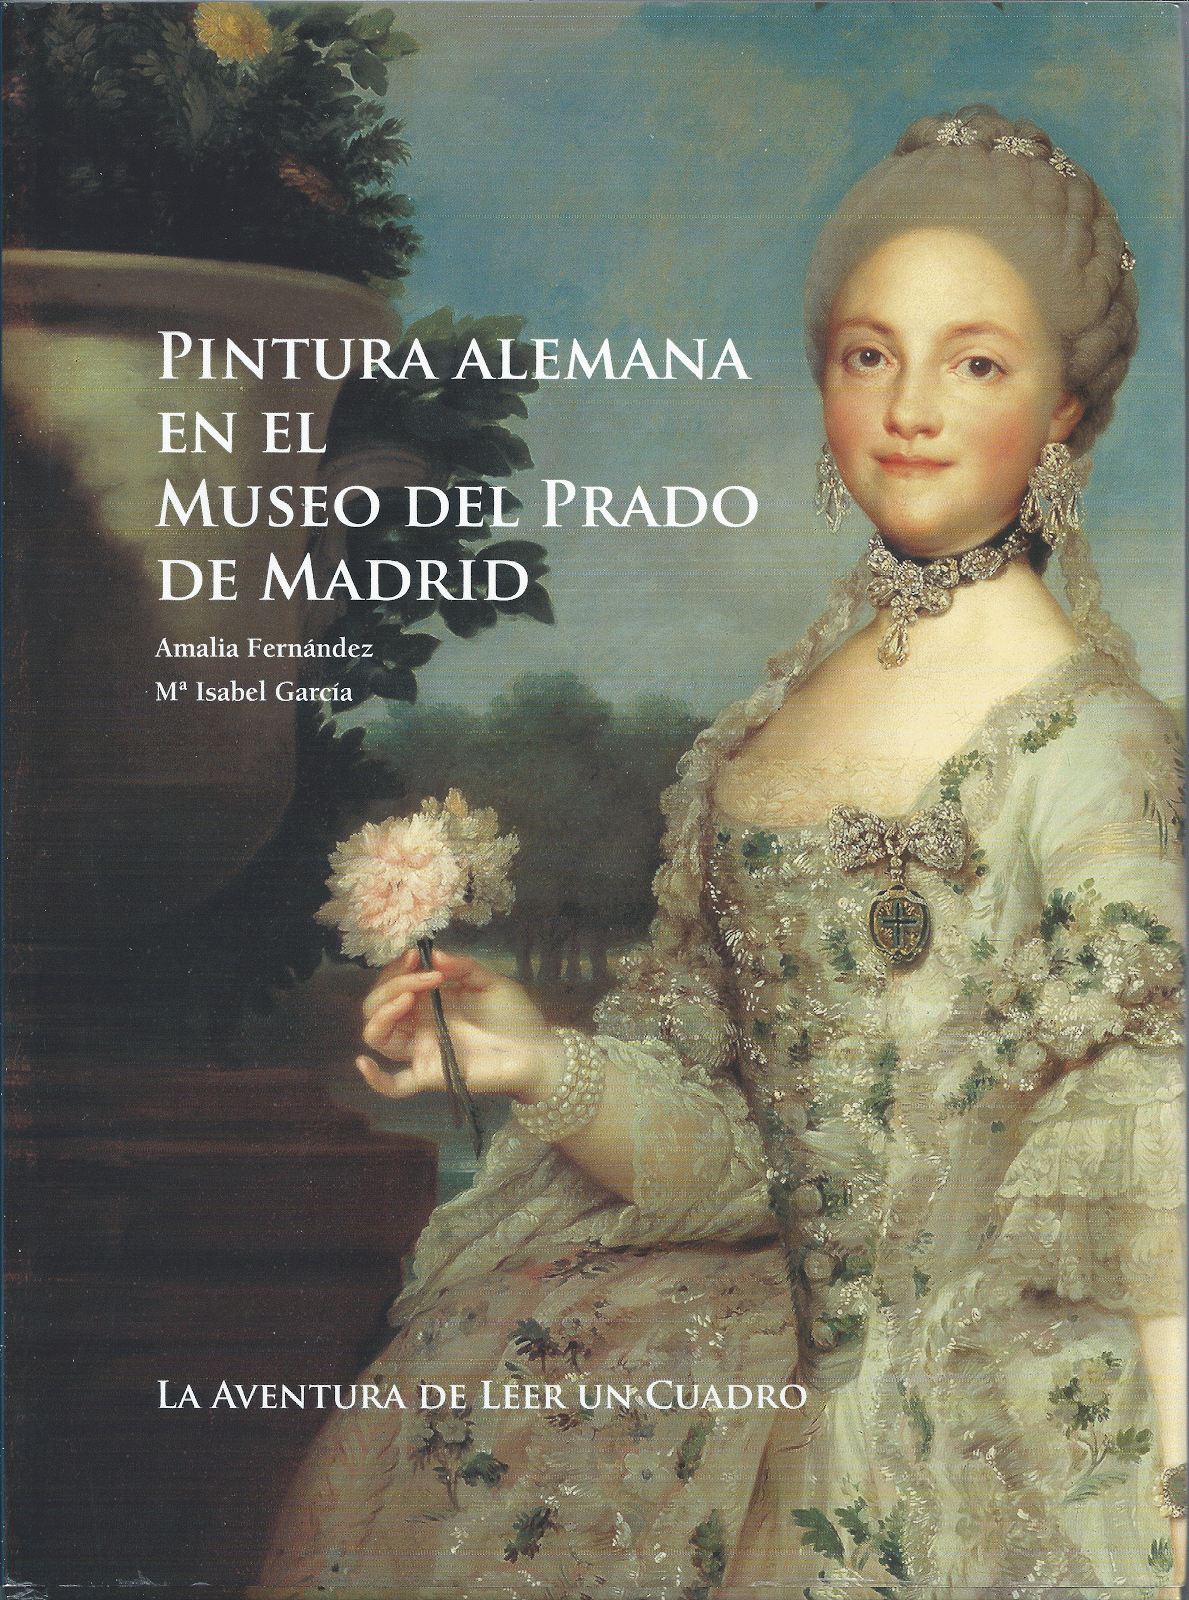 Pintura Alemana en el Museo del Prado